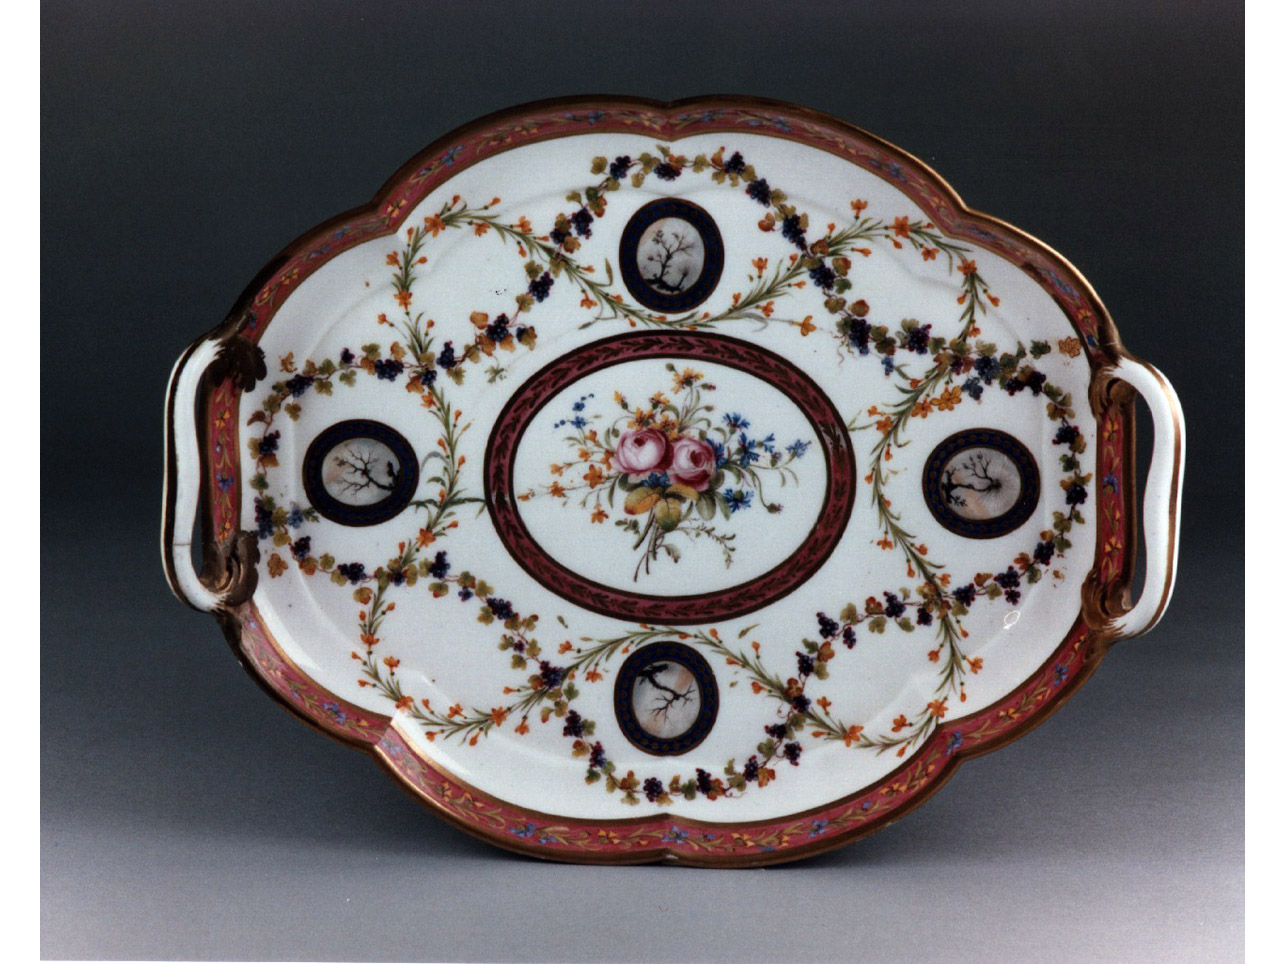 motivi decorativi floreali (servizio da colazione, insieme) - manifattura di Sèvres (sec. XVIII)